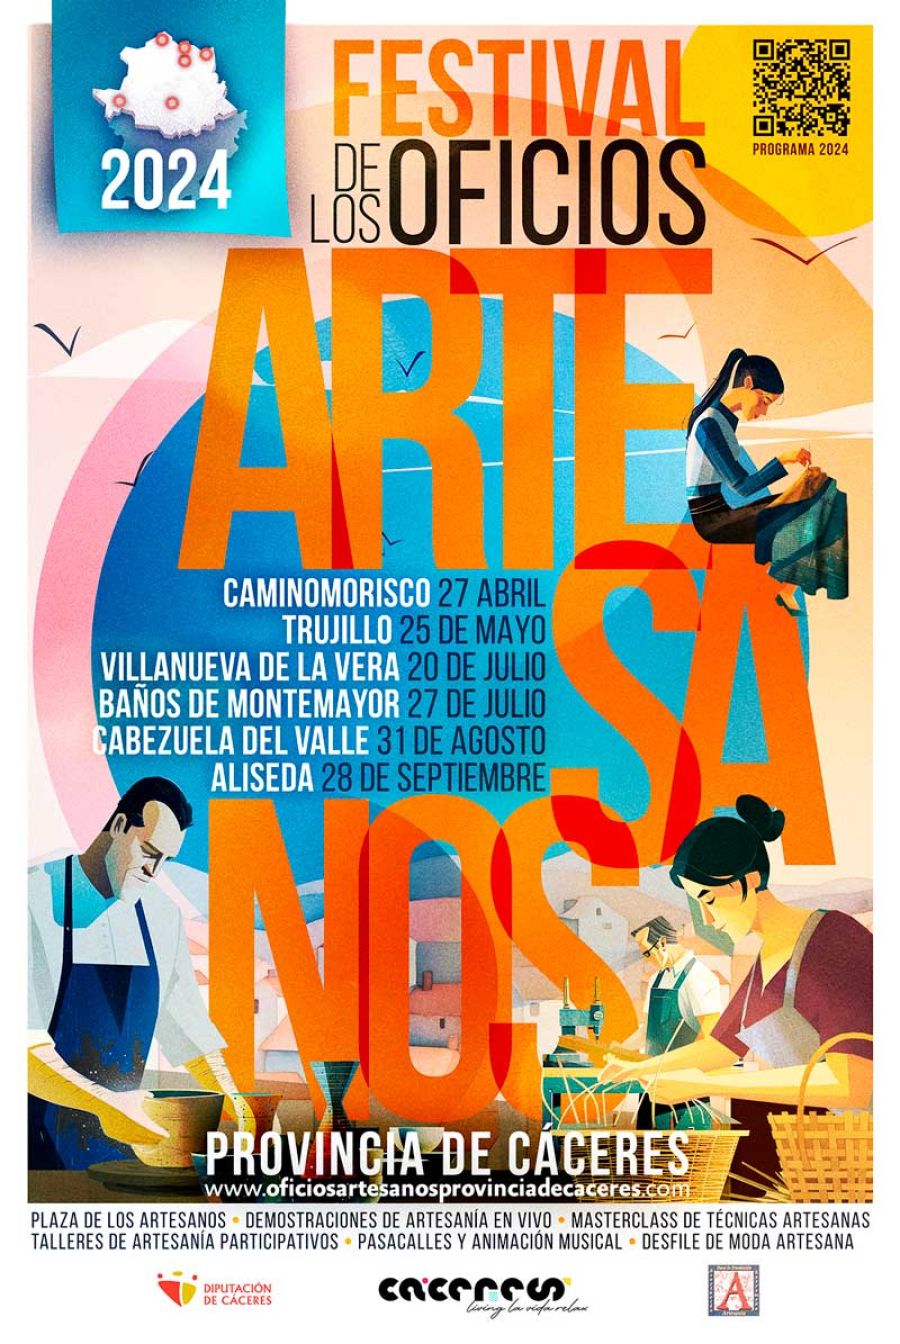 Festival de Oficios Artesanos de la Provincia de Cáceres 2024 | VILLANUEVA DE LA VERA